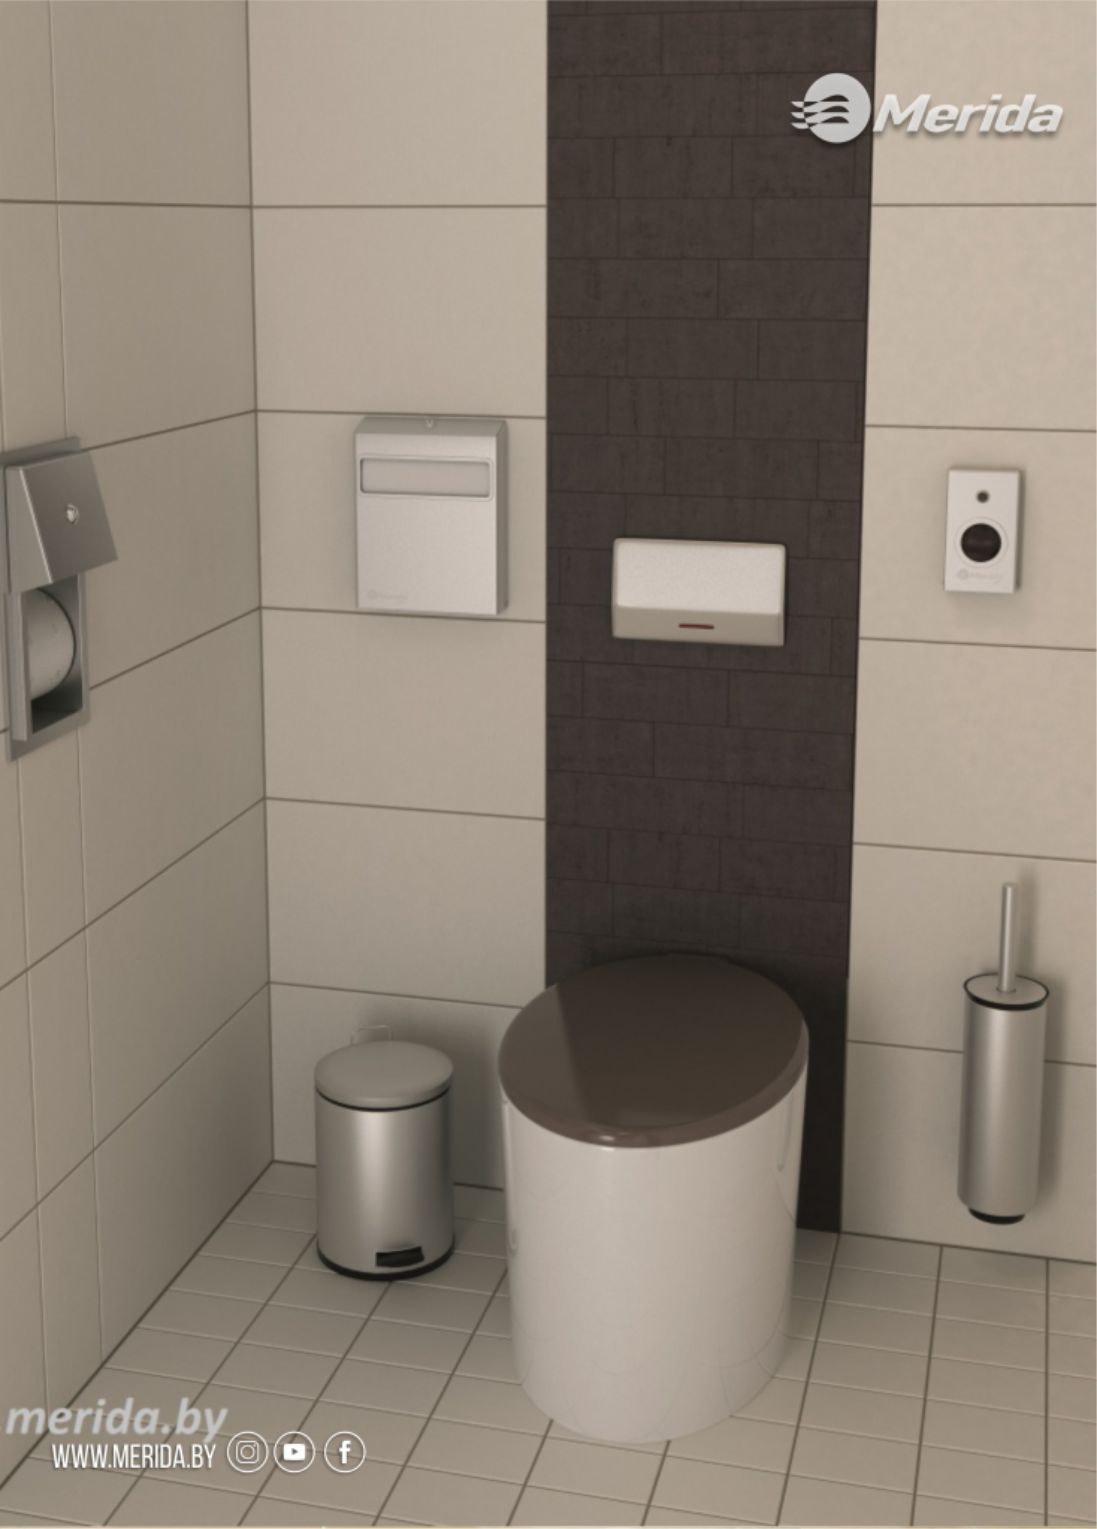 Индивидуальная кабинка туалетной комнаты